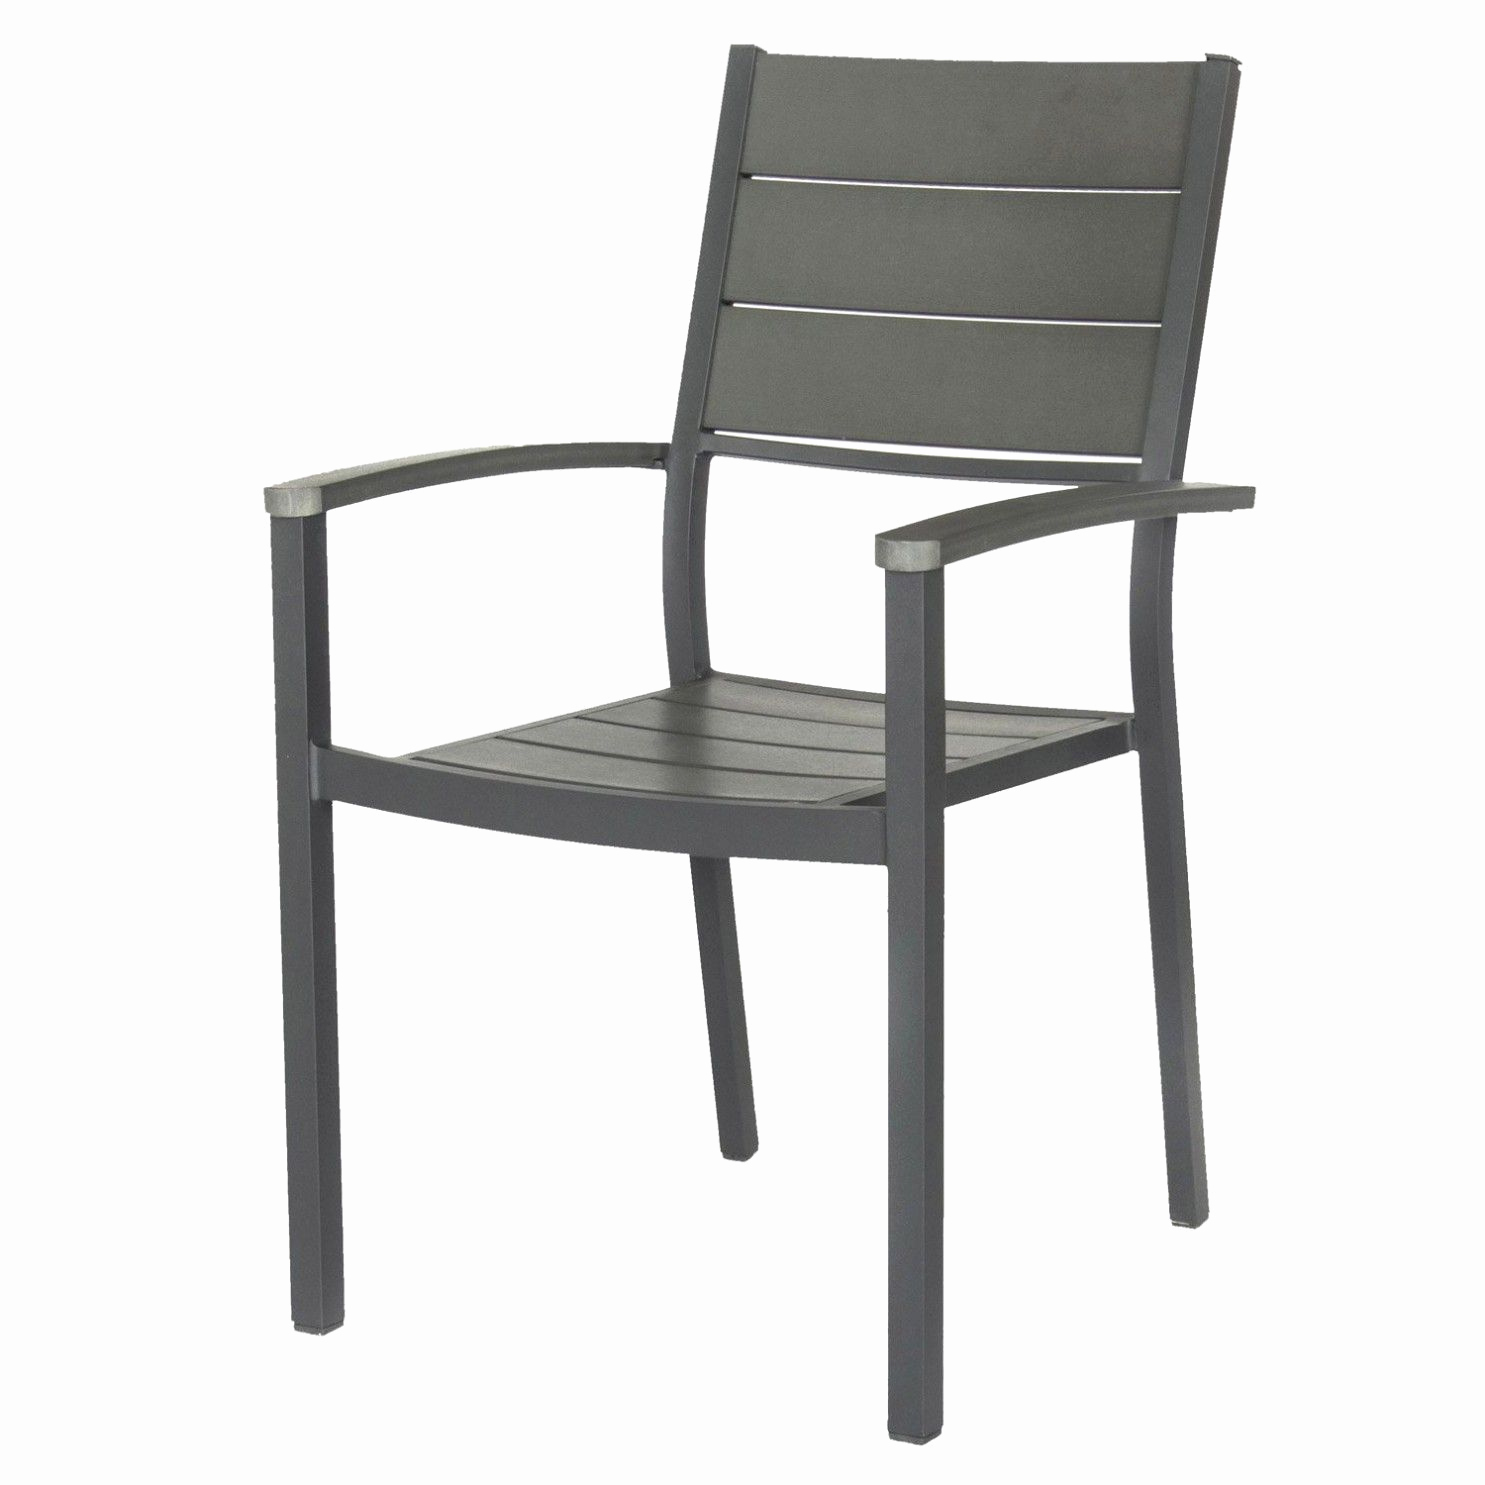 carreau de chaise le meilleur de galette chaise jardin 50x50 ou lesmeubles fauteuil jardin bois of carreau de chaise